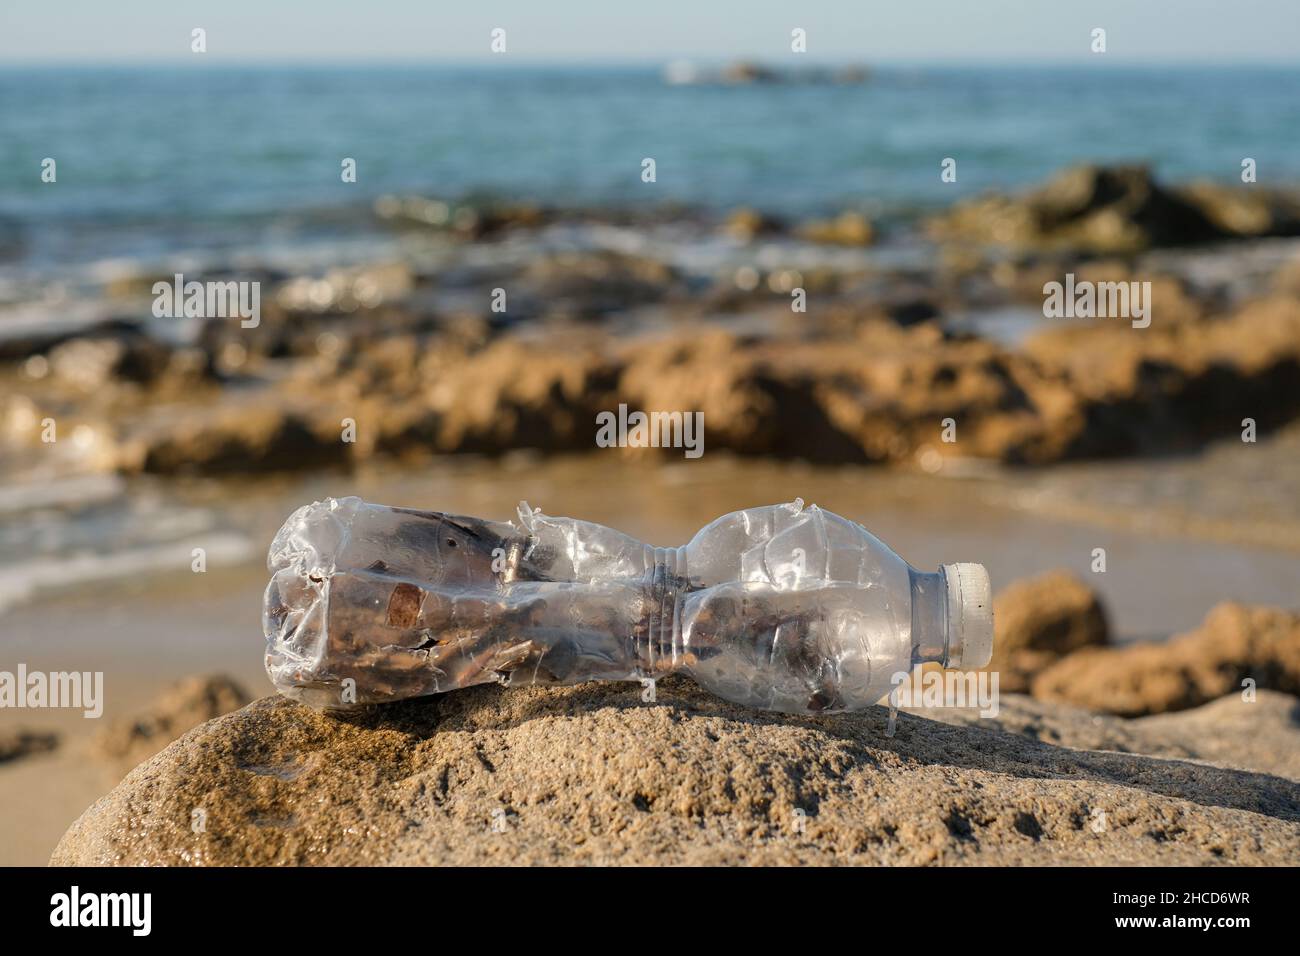 Botella de plástico desechada en el ecosistema marino contaminado por contaminación, desechos del medio ambiente Foto de stock